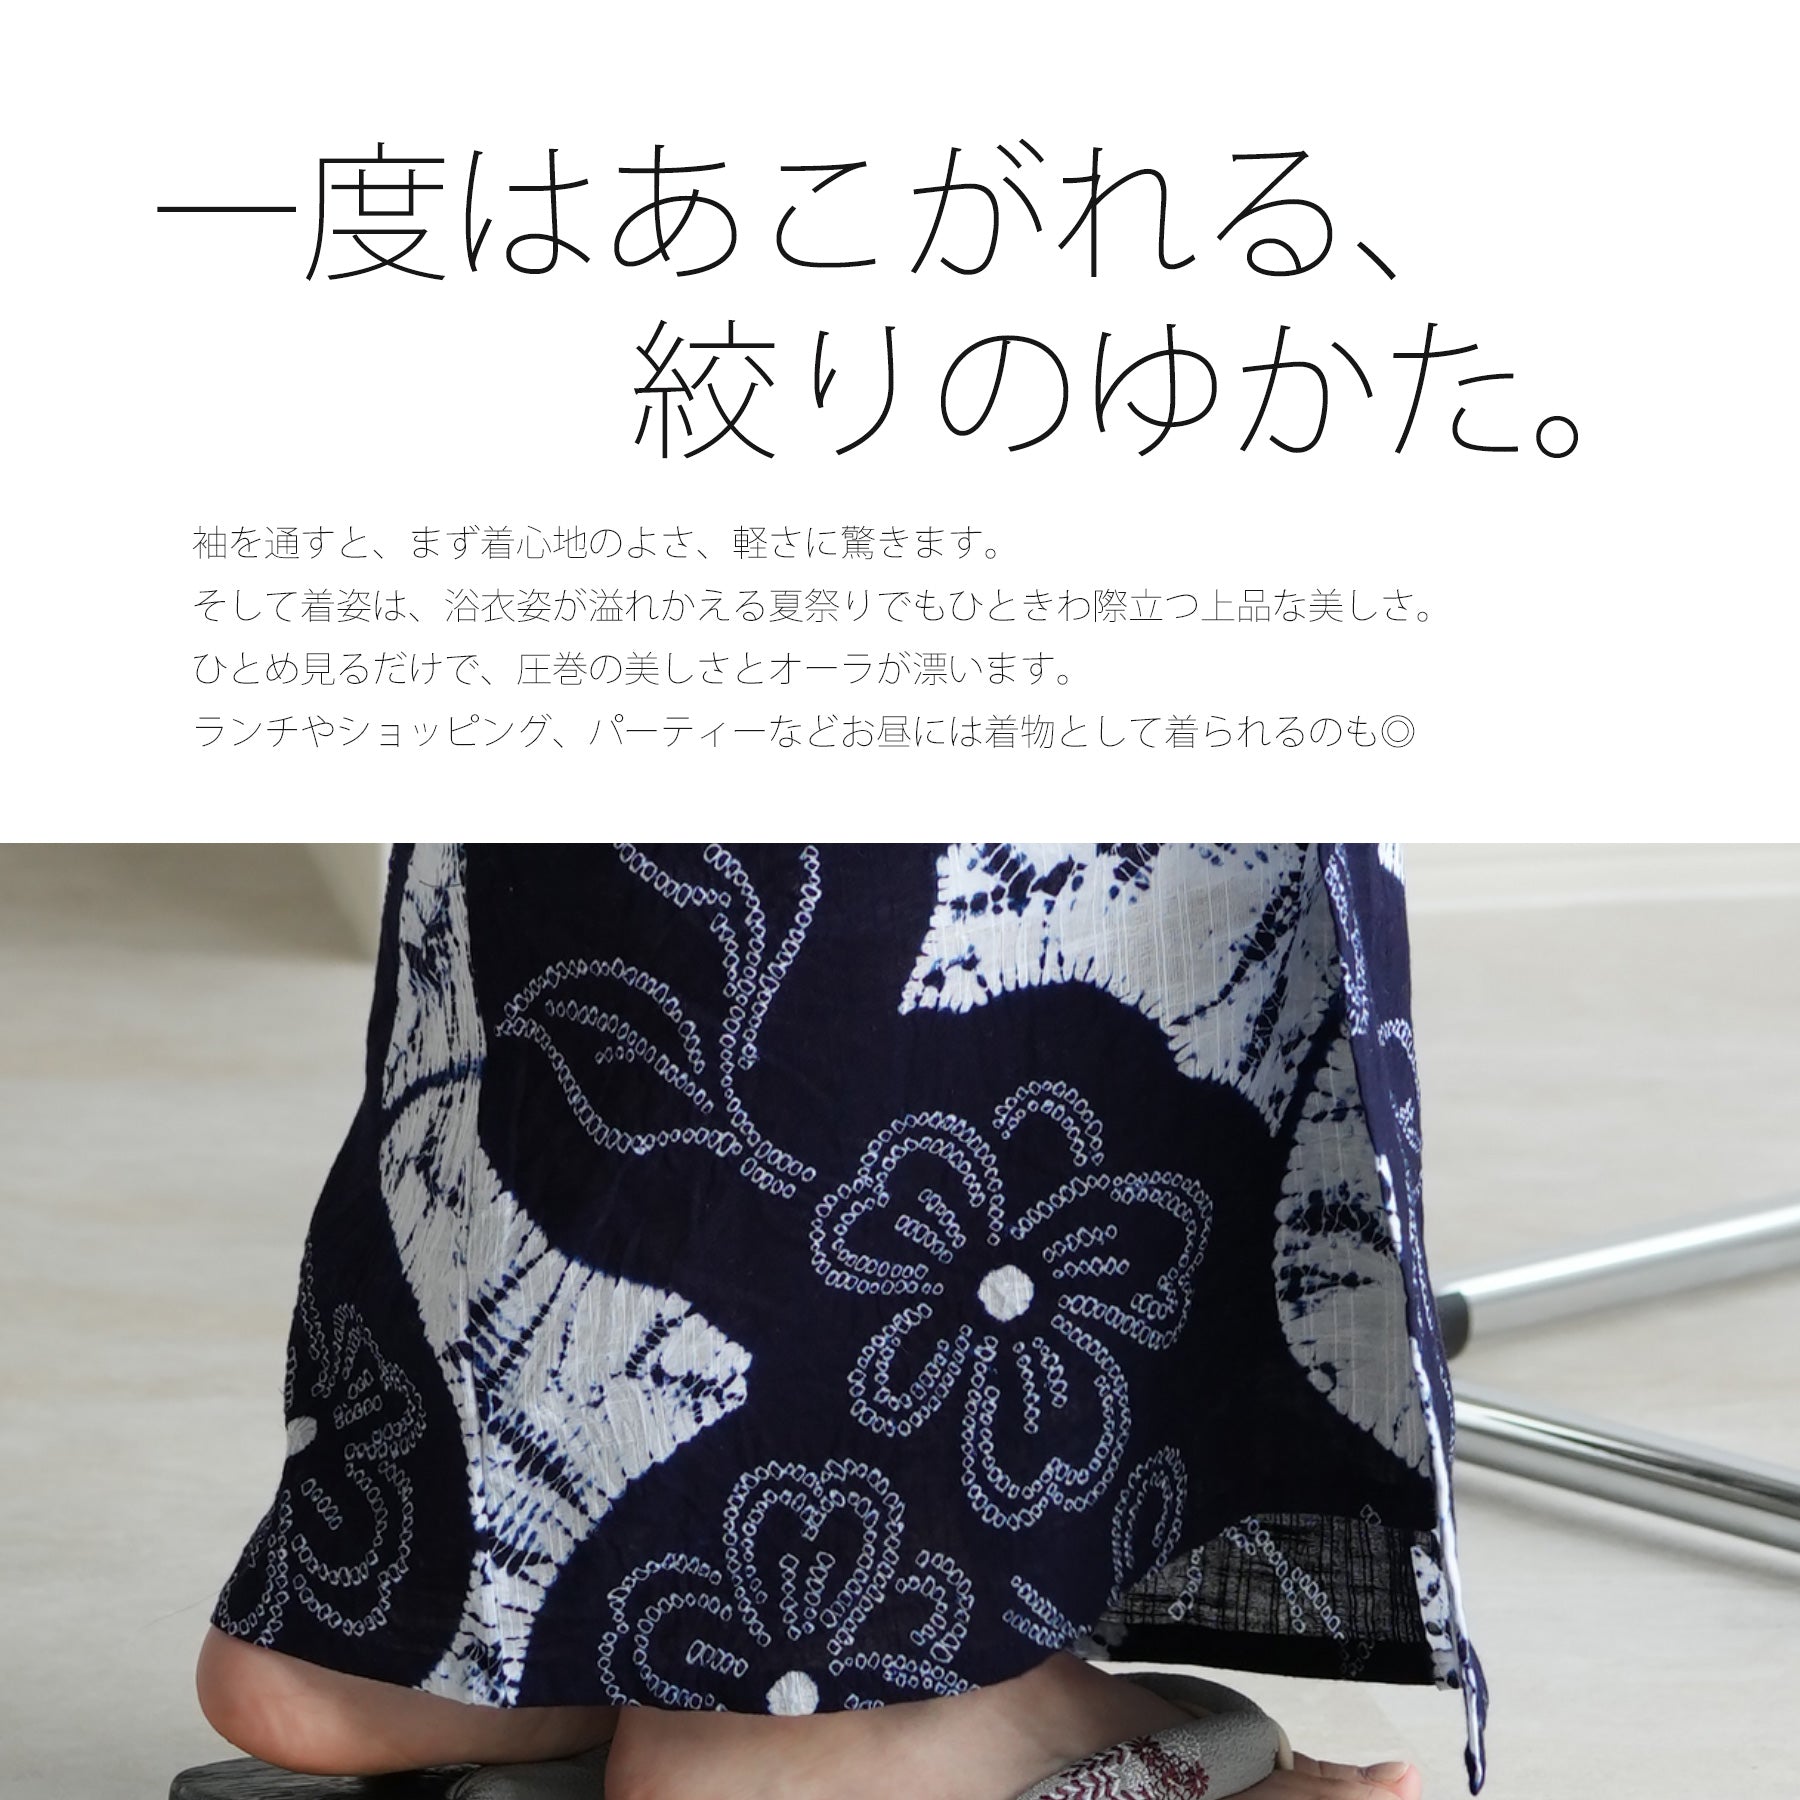 utatane 有松絞り 浴衣3点セット ( ゆかた・帯・下駄 ) 綿麻 白と濃紺 